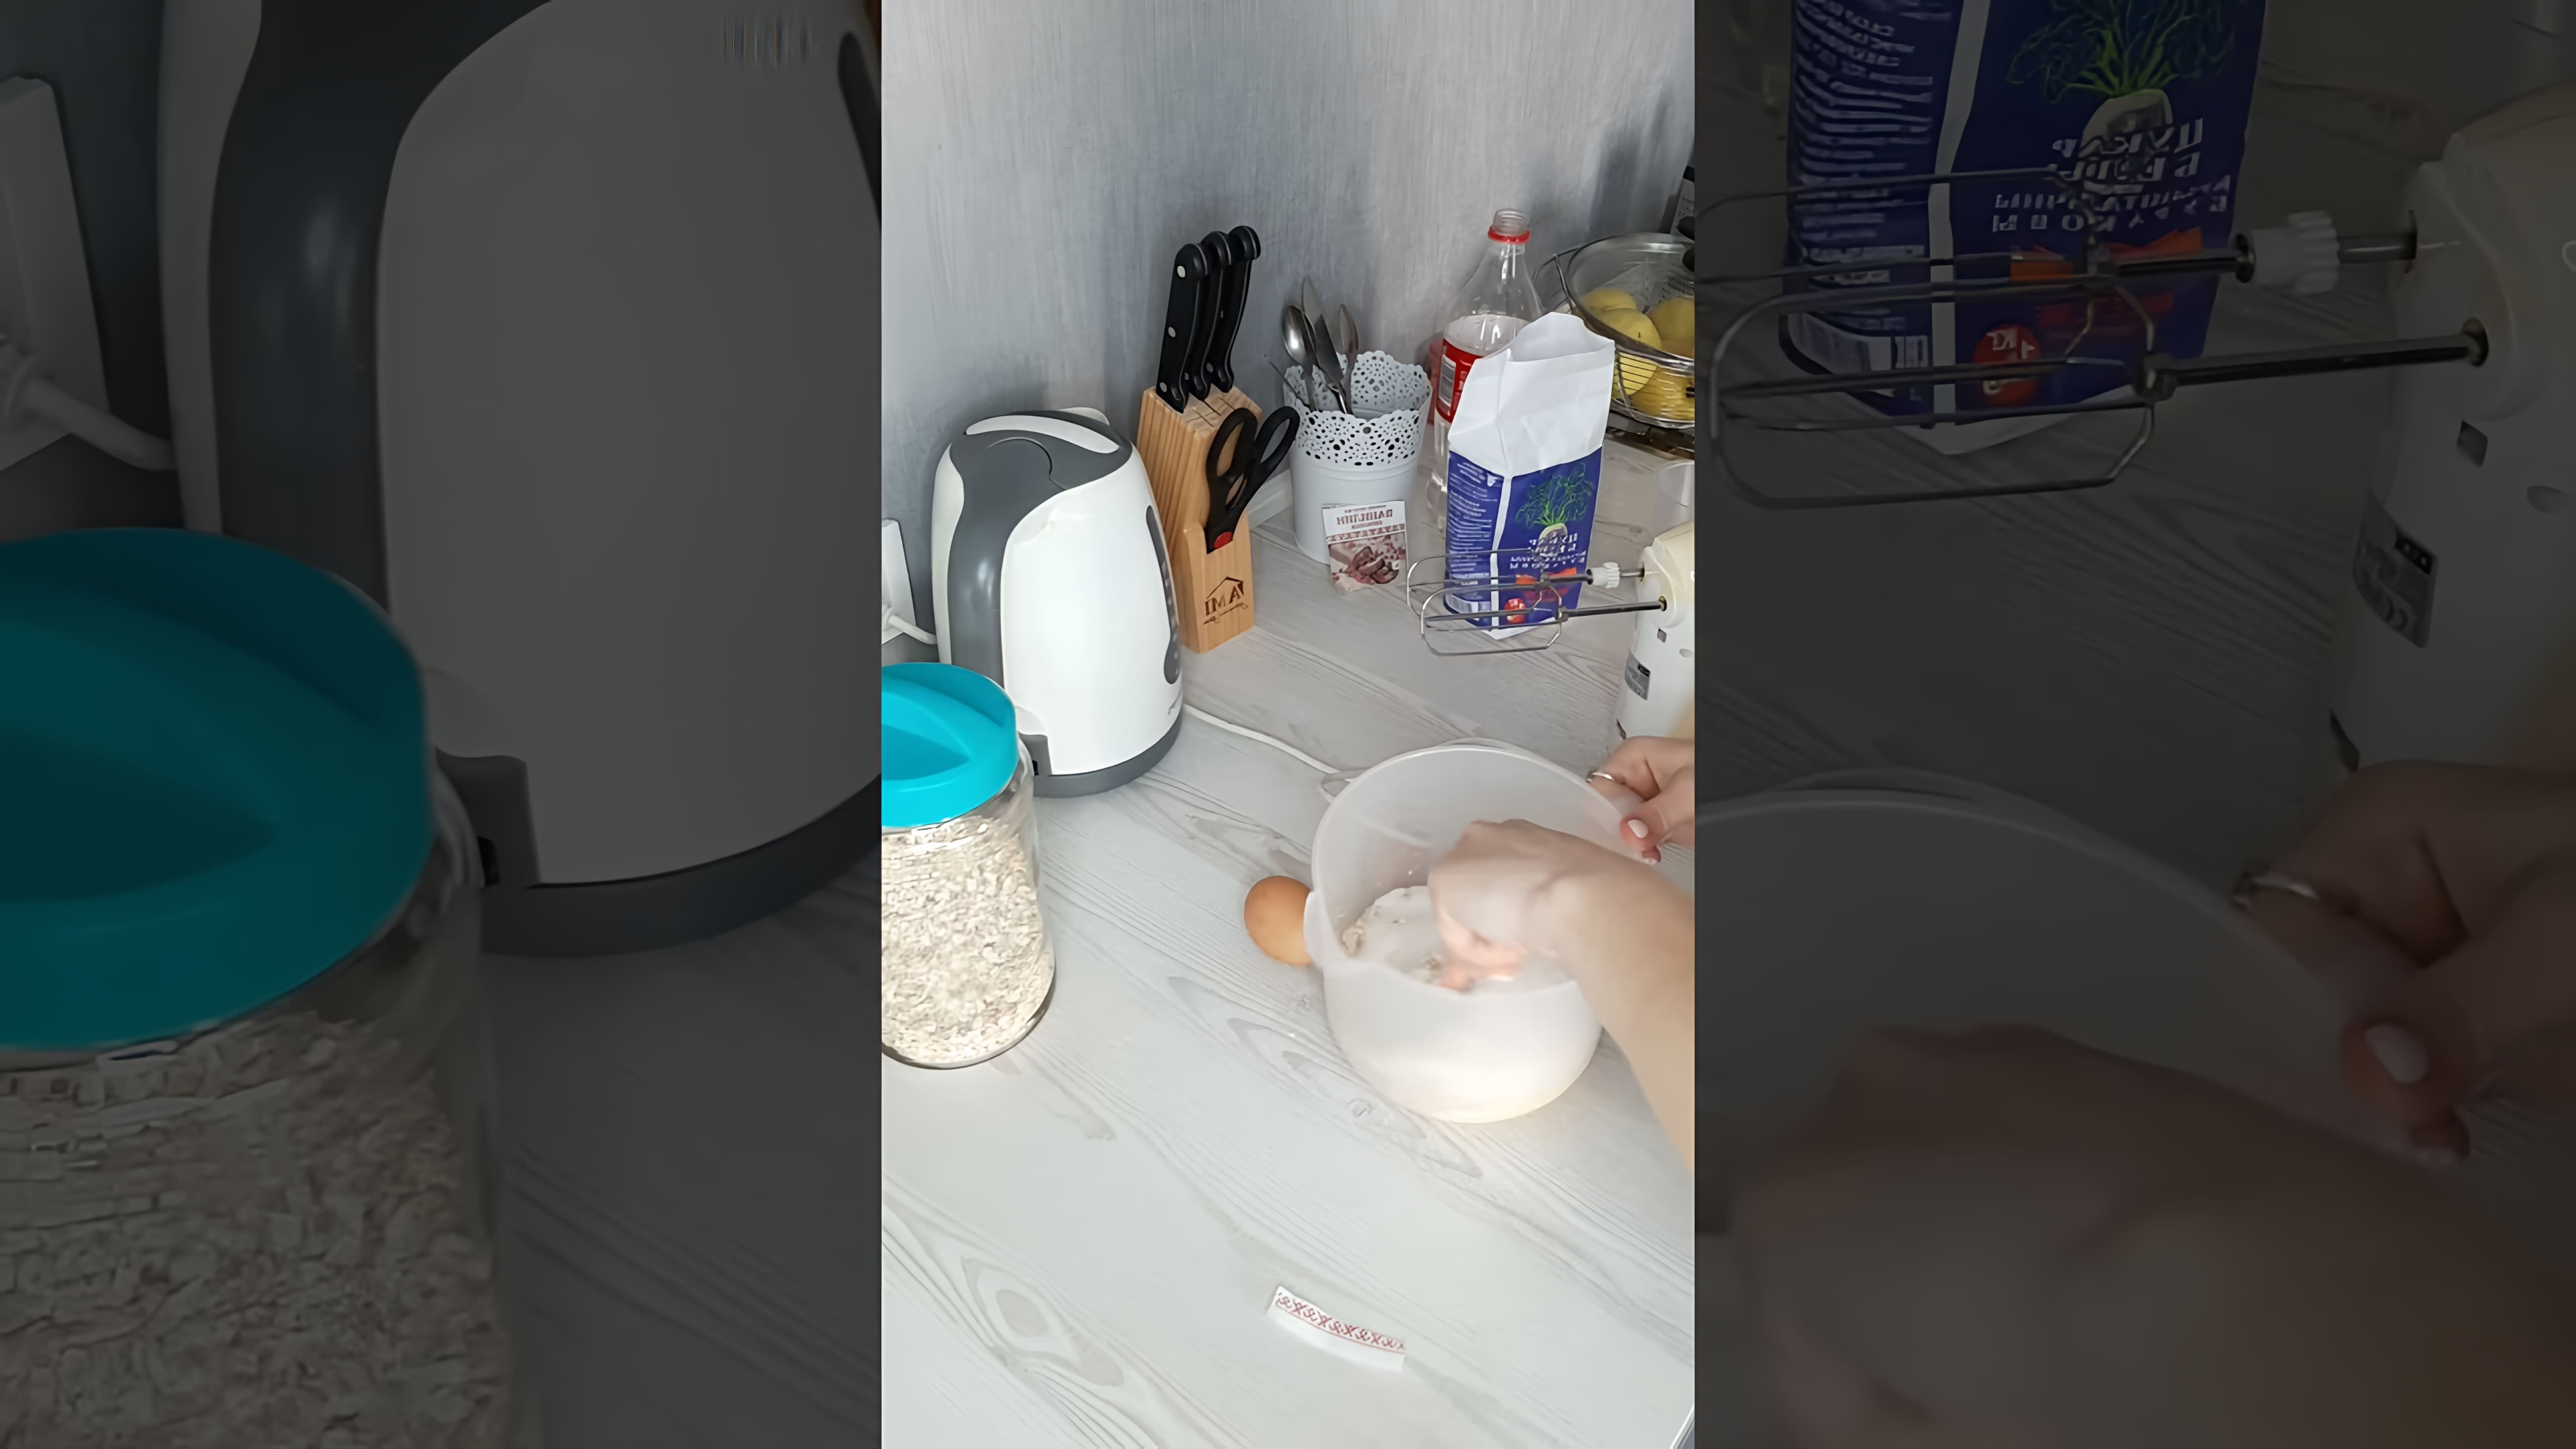 Овсяное печенье Быстро - это видео-ролик, который демонстрирует процесс приготовления овсяного печенья в домашних условиях